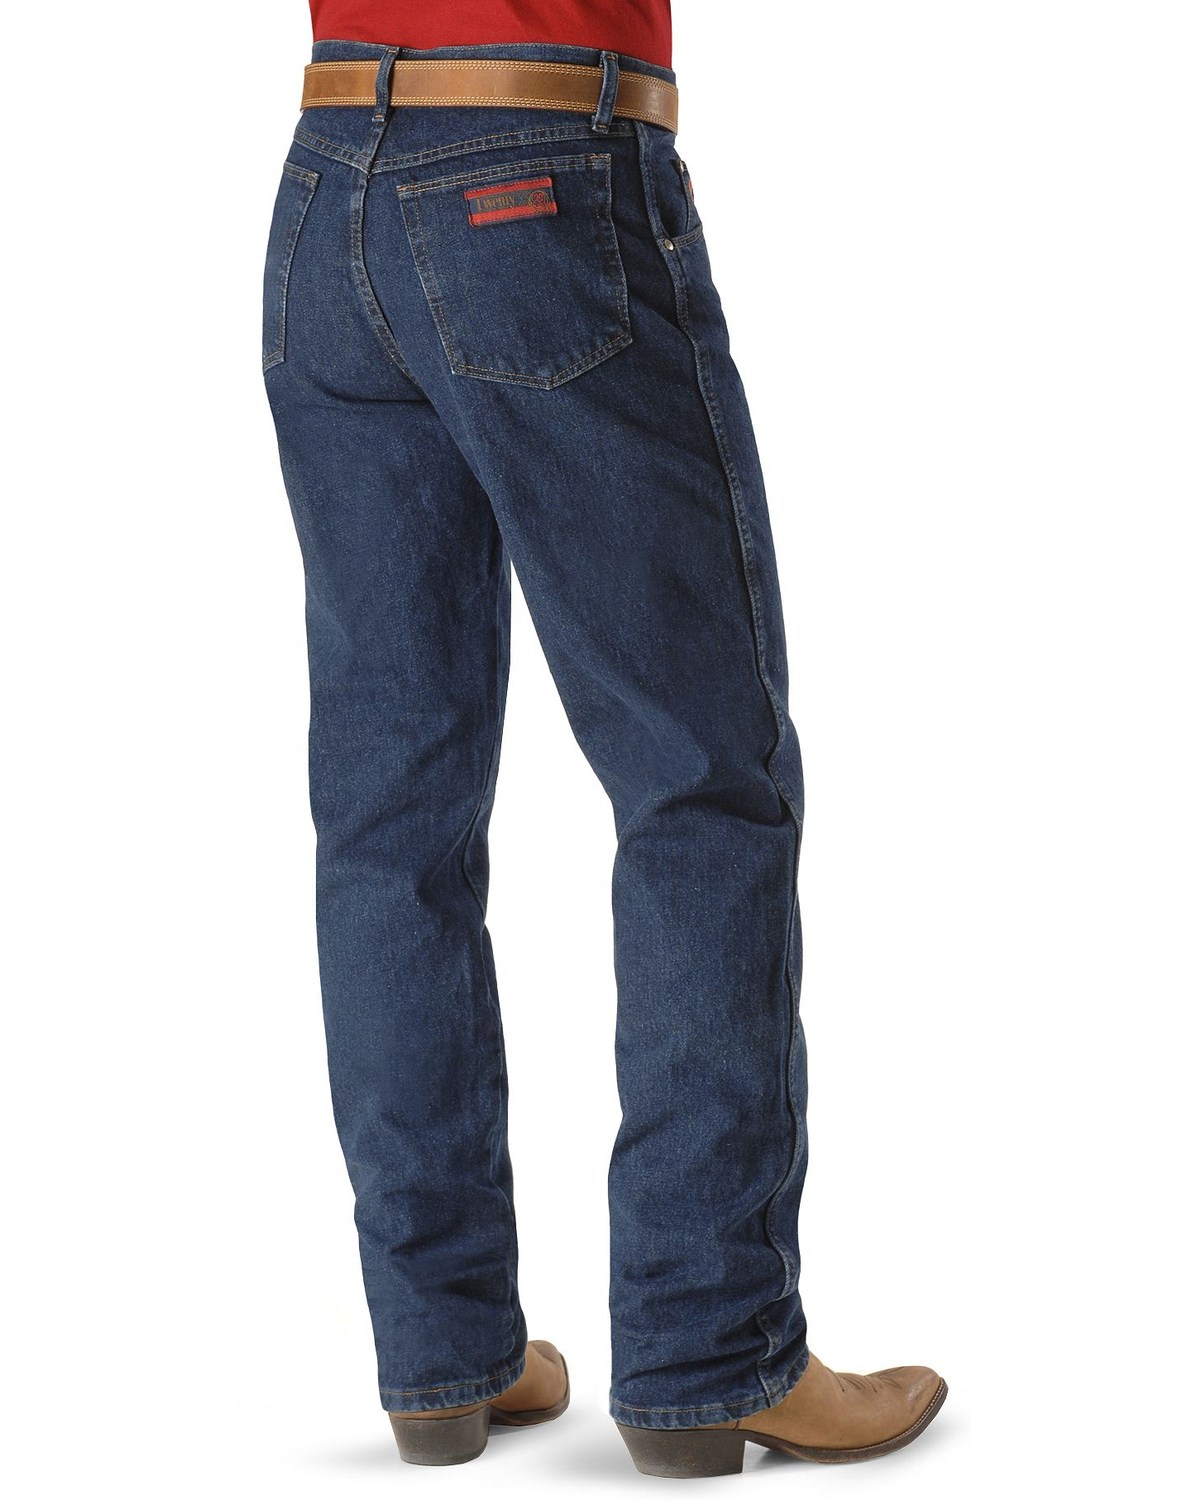 Wrangler 20X No. 22 Original Jeans | Boot Barn